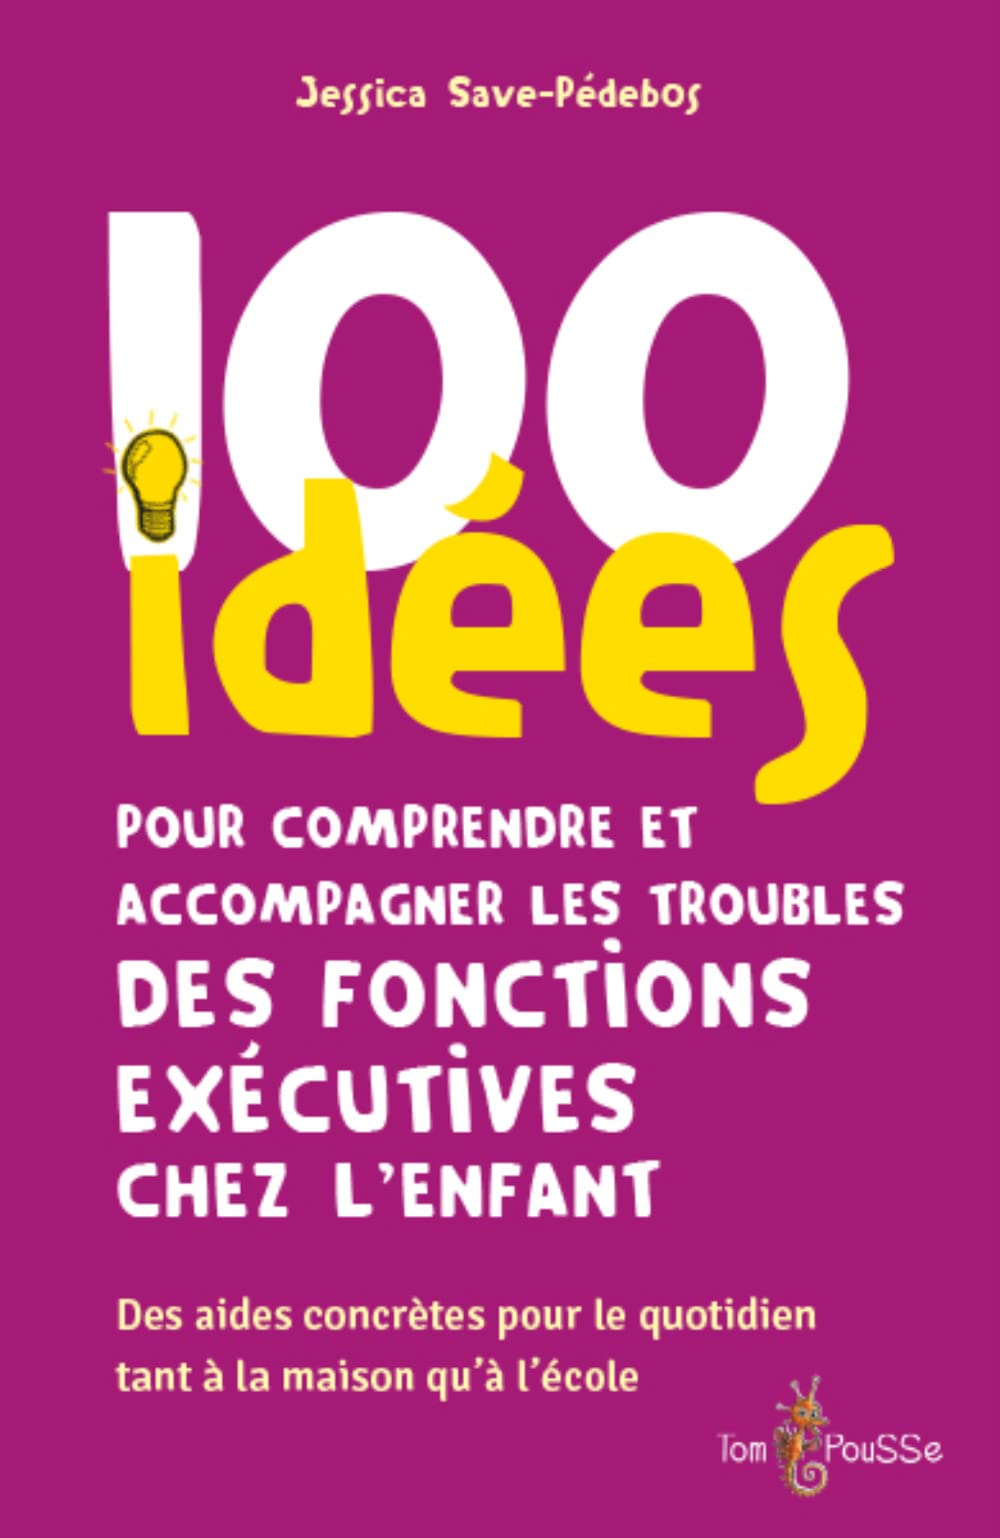 Couverture Live 100 idée fonctions executives